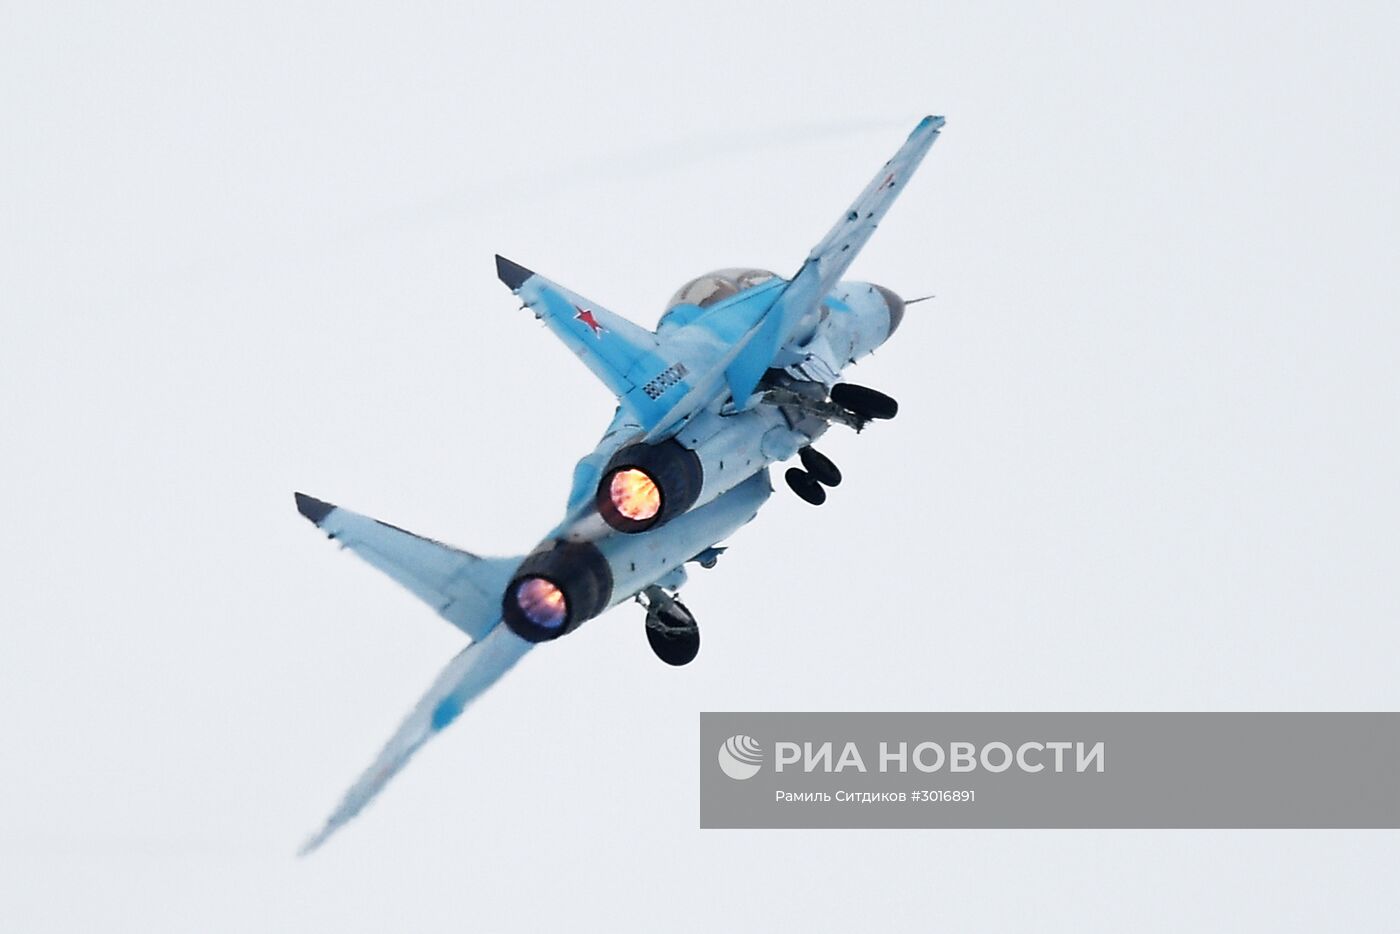 Презентация авиационного комплекса МиГ-35 в Московской области